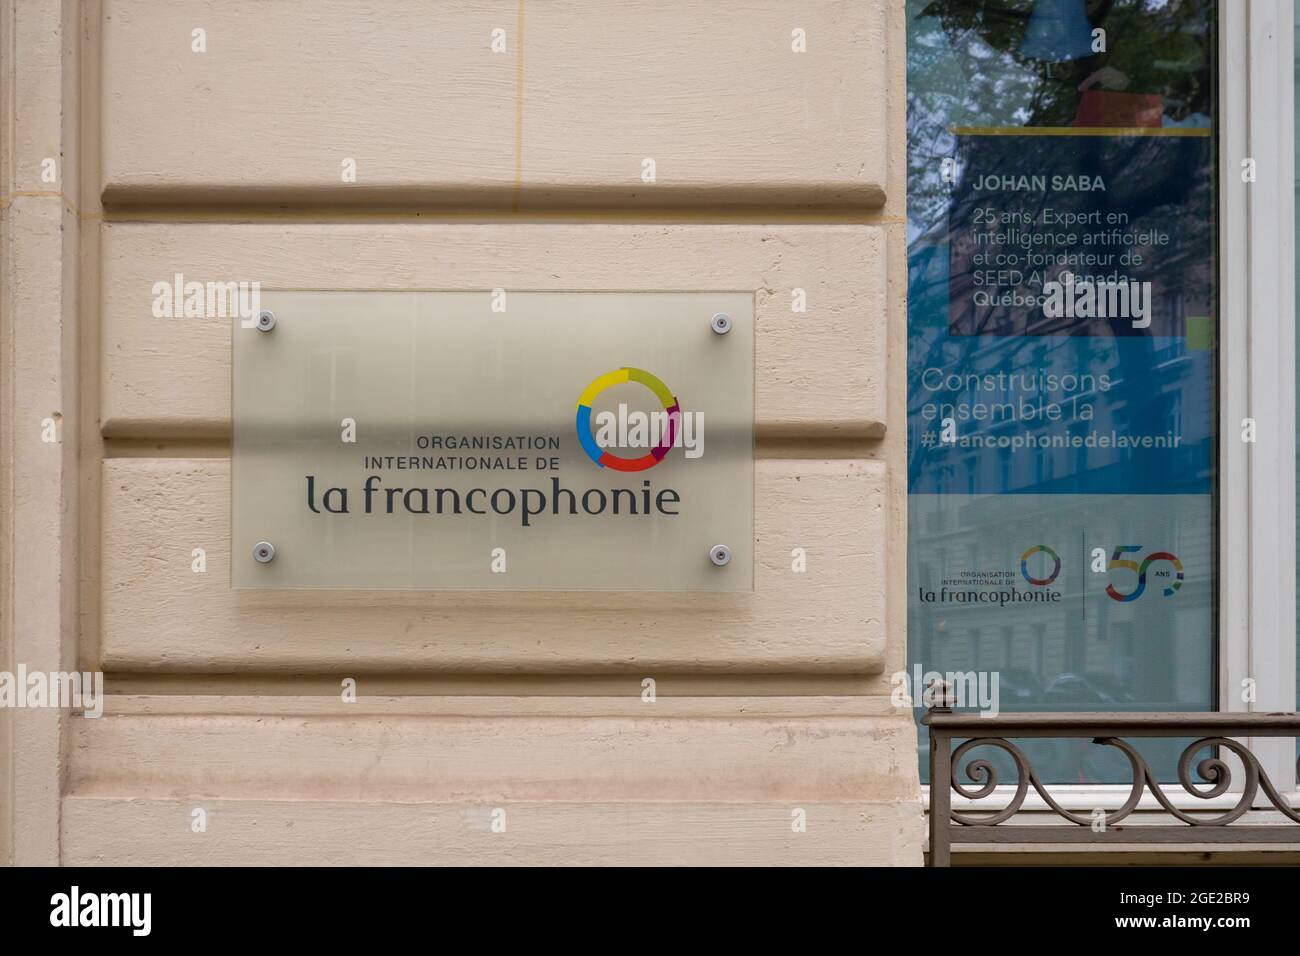 PARIS, FRANKREICH - Jul 30, 2021: Eine internationale Organisation von Francophonie Logo Signage auf einer Holzwand Stockfoto